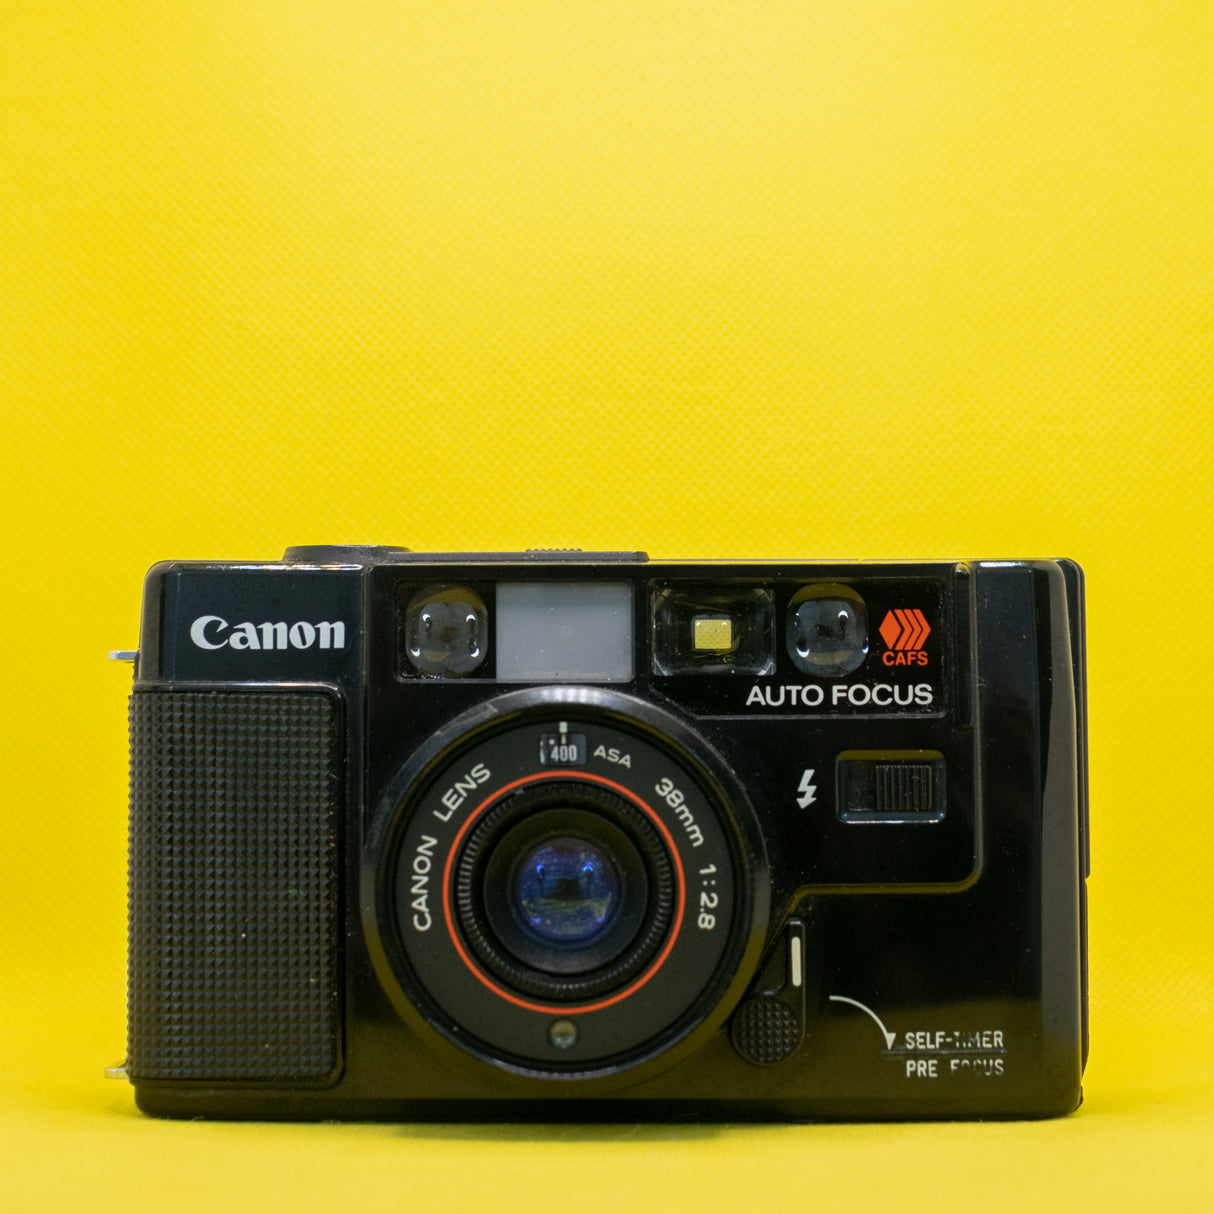 Canon AF35M - Telemetro vintage per fotocamera a pellicola premium da 35 mm